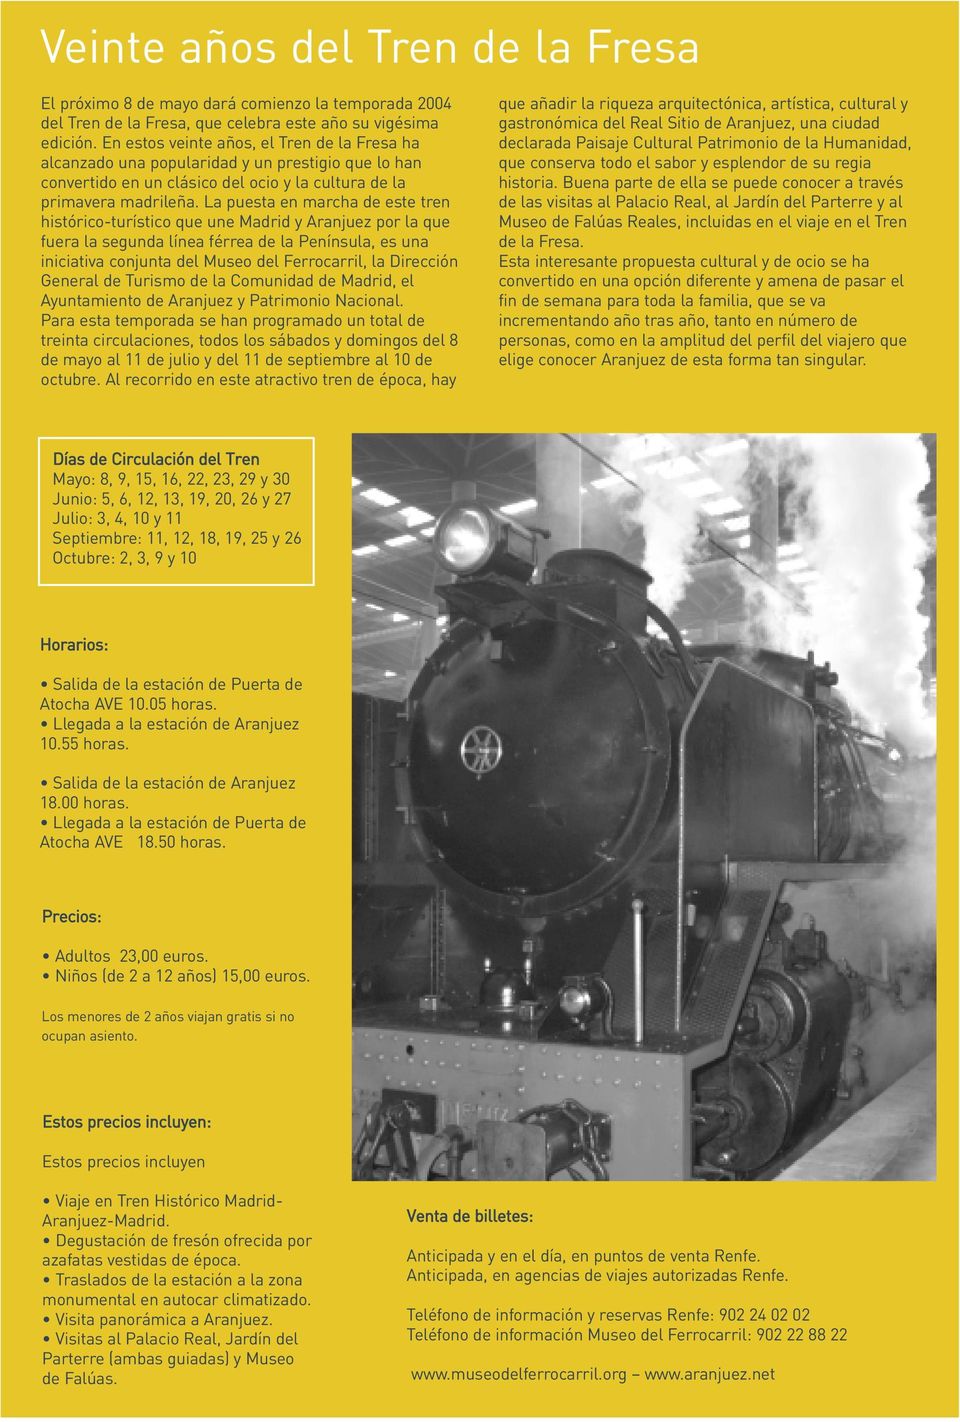 La puesta en marcha de este tren histórico-turístico que une Madrid y Aranjuez por la que fuera la segunda línea férrea de la Península, es una iniciativa conjunta del Museo del Ferrocarril, la